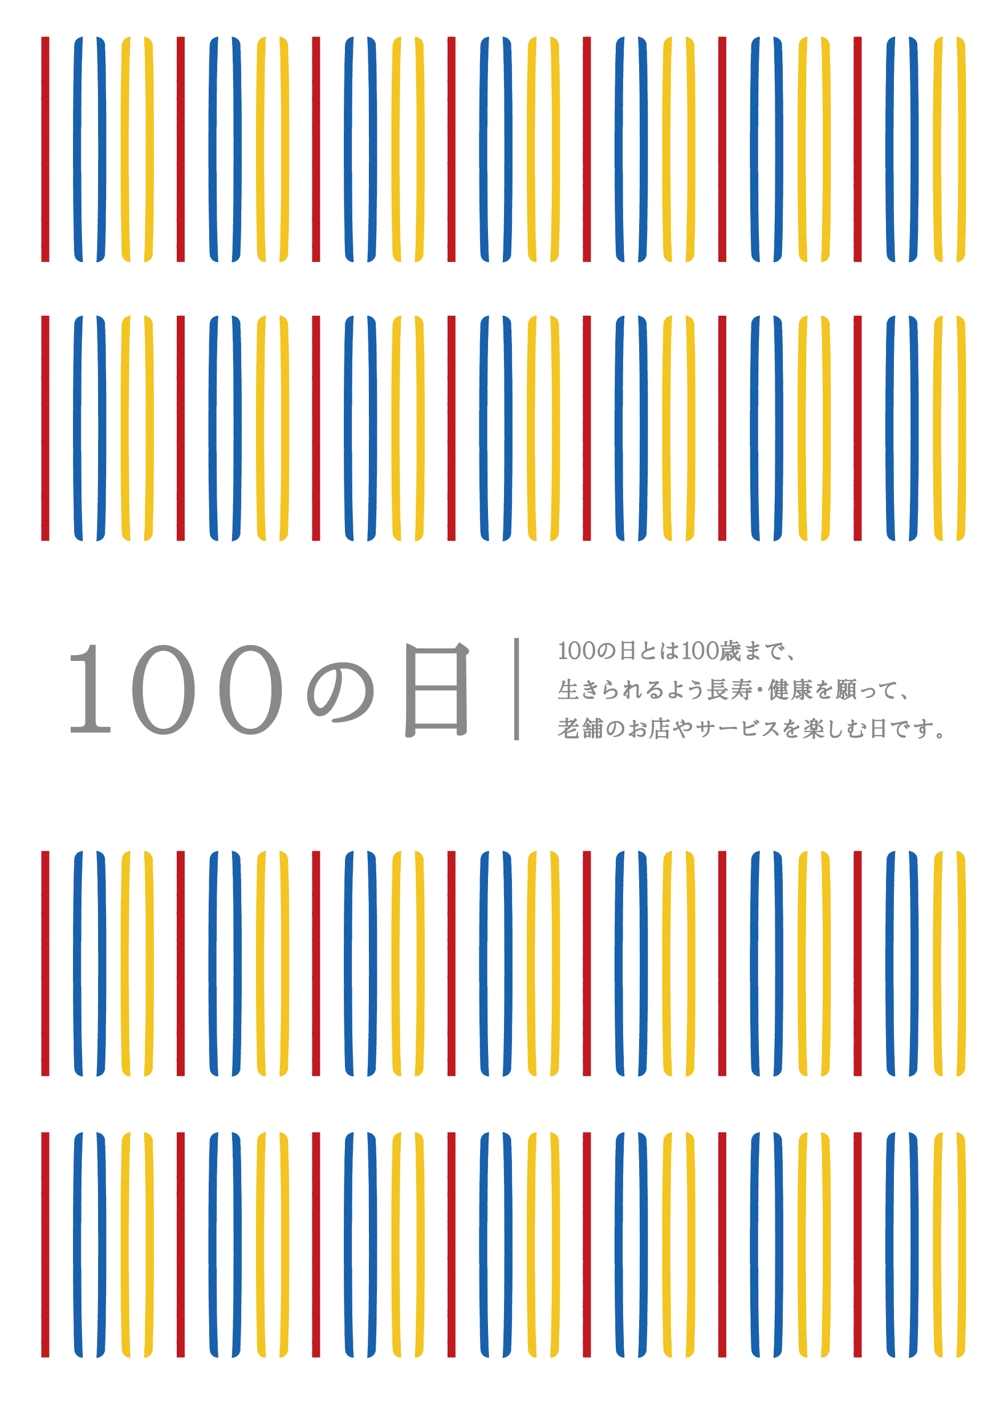 100の日A3d.jpg